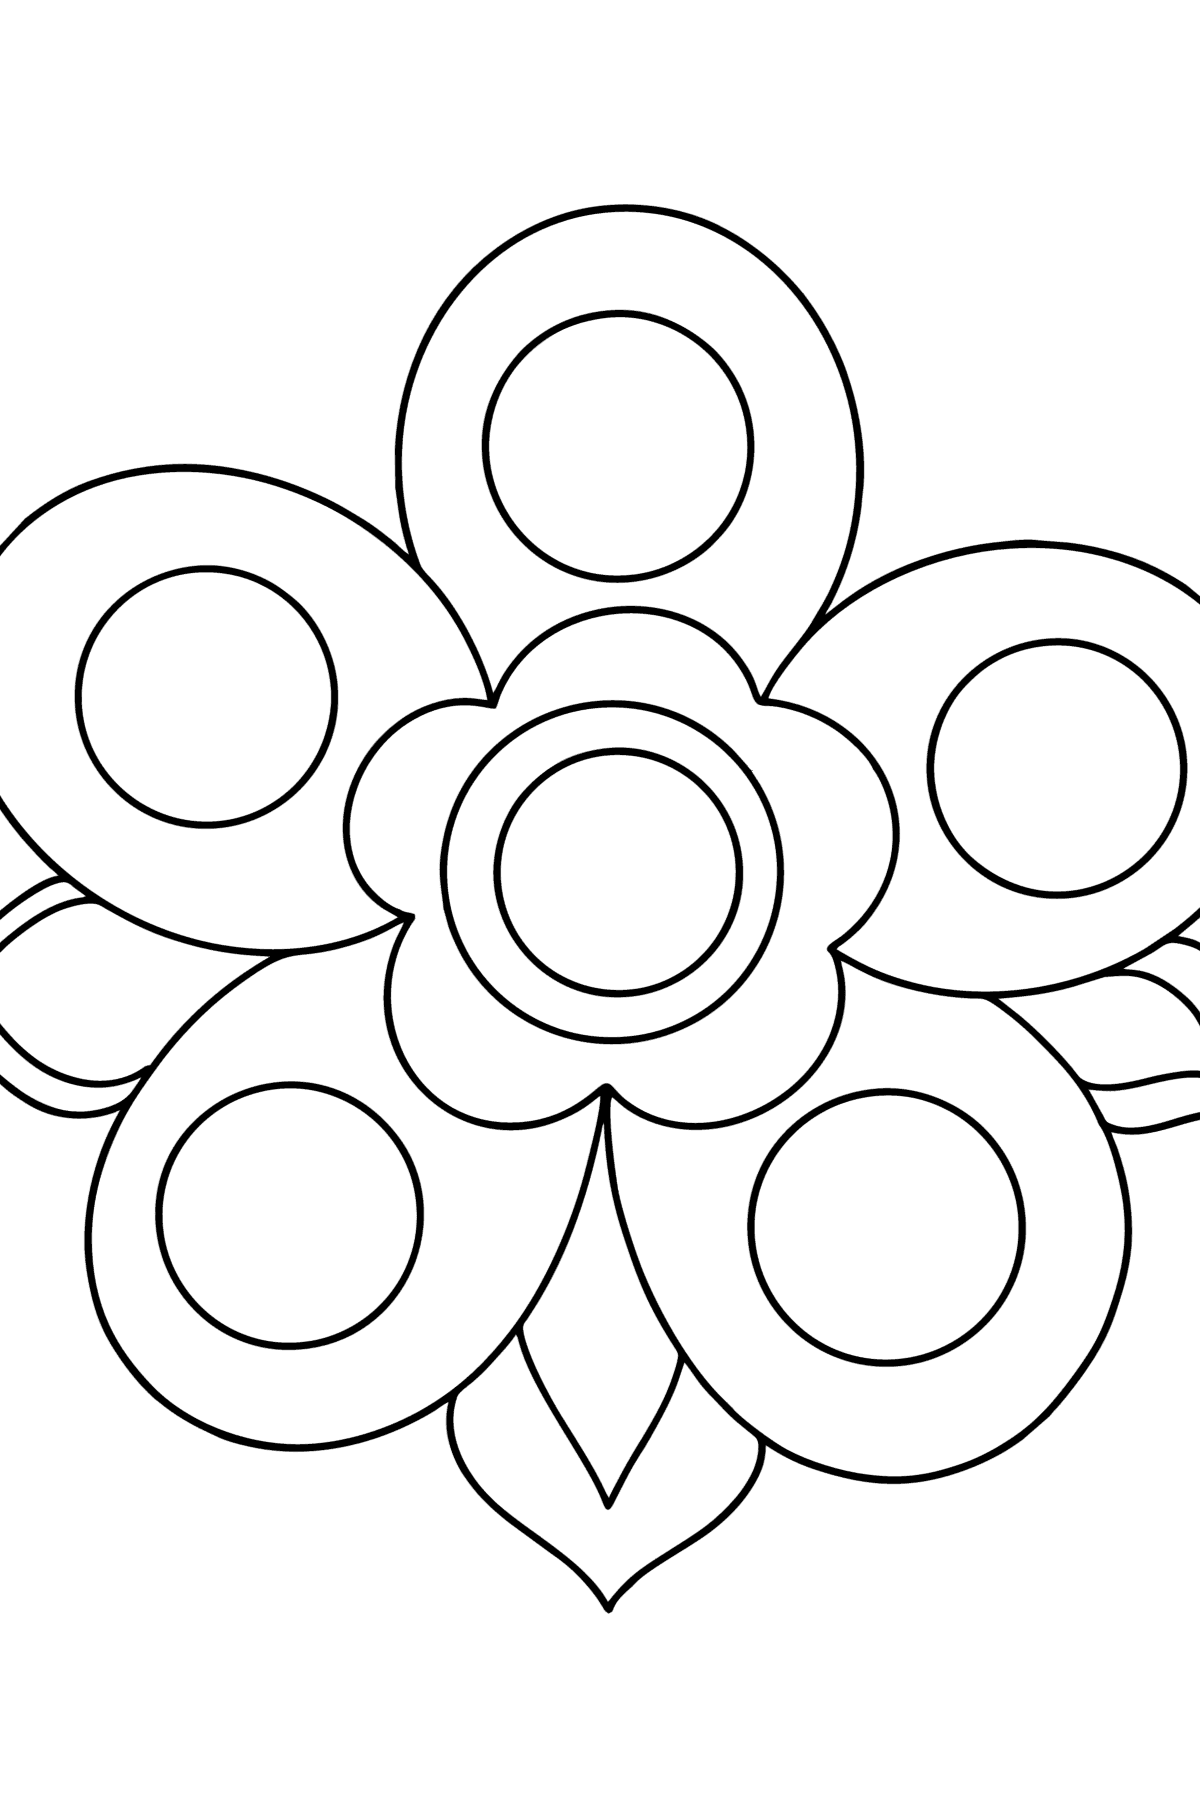 Dibujo de Mandala simple para colorear - Dibujos para Colorear para Niños